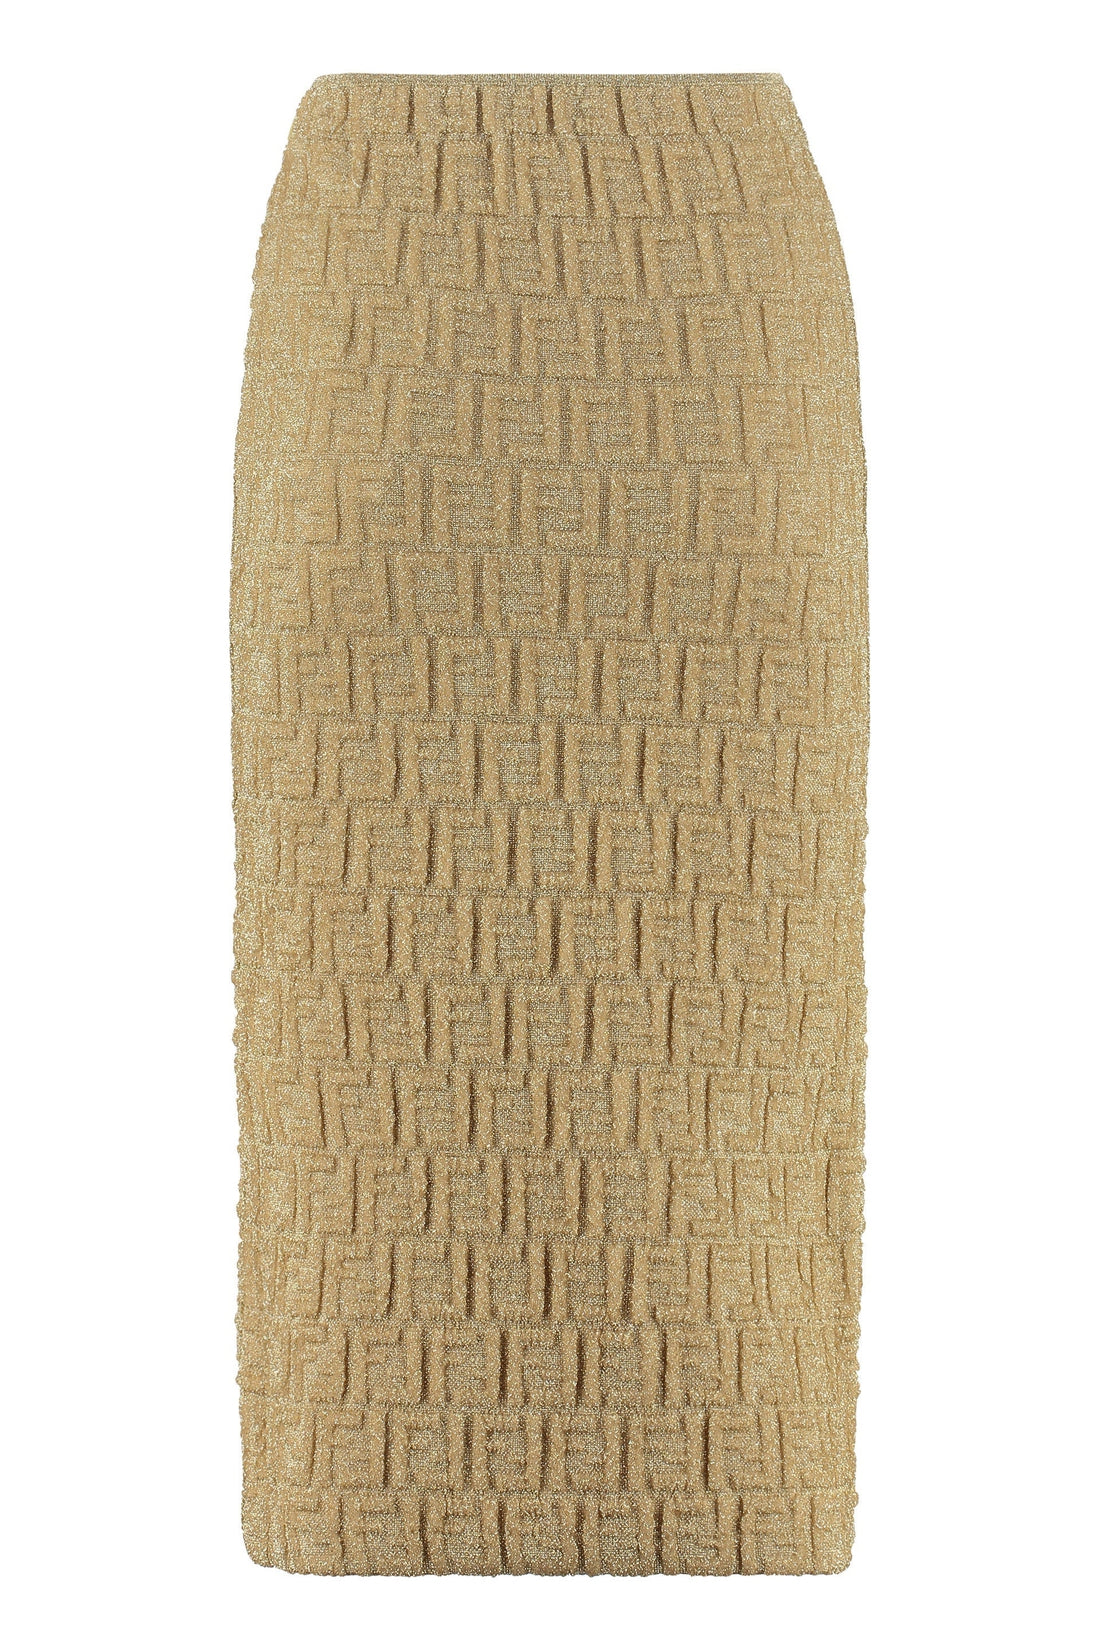 Fendi-OUTLET-SALE-Lurex knit sheath skirt-ARCHIVIST